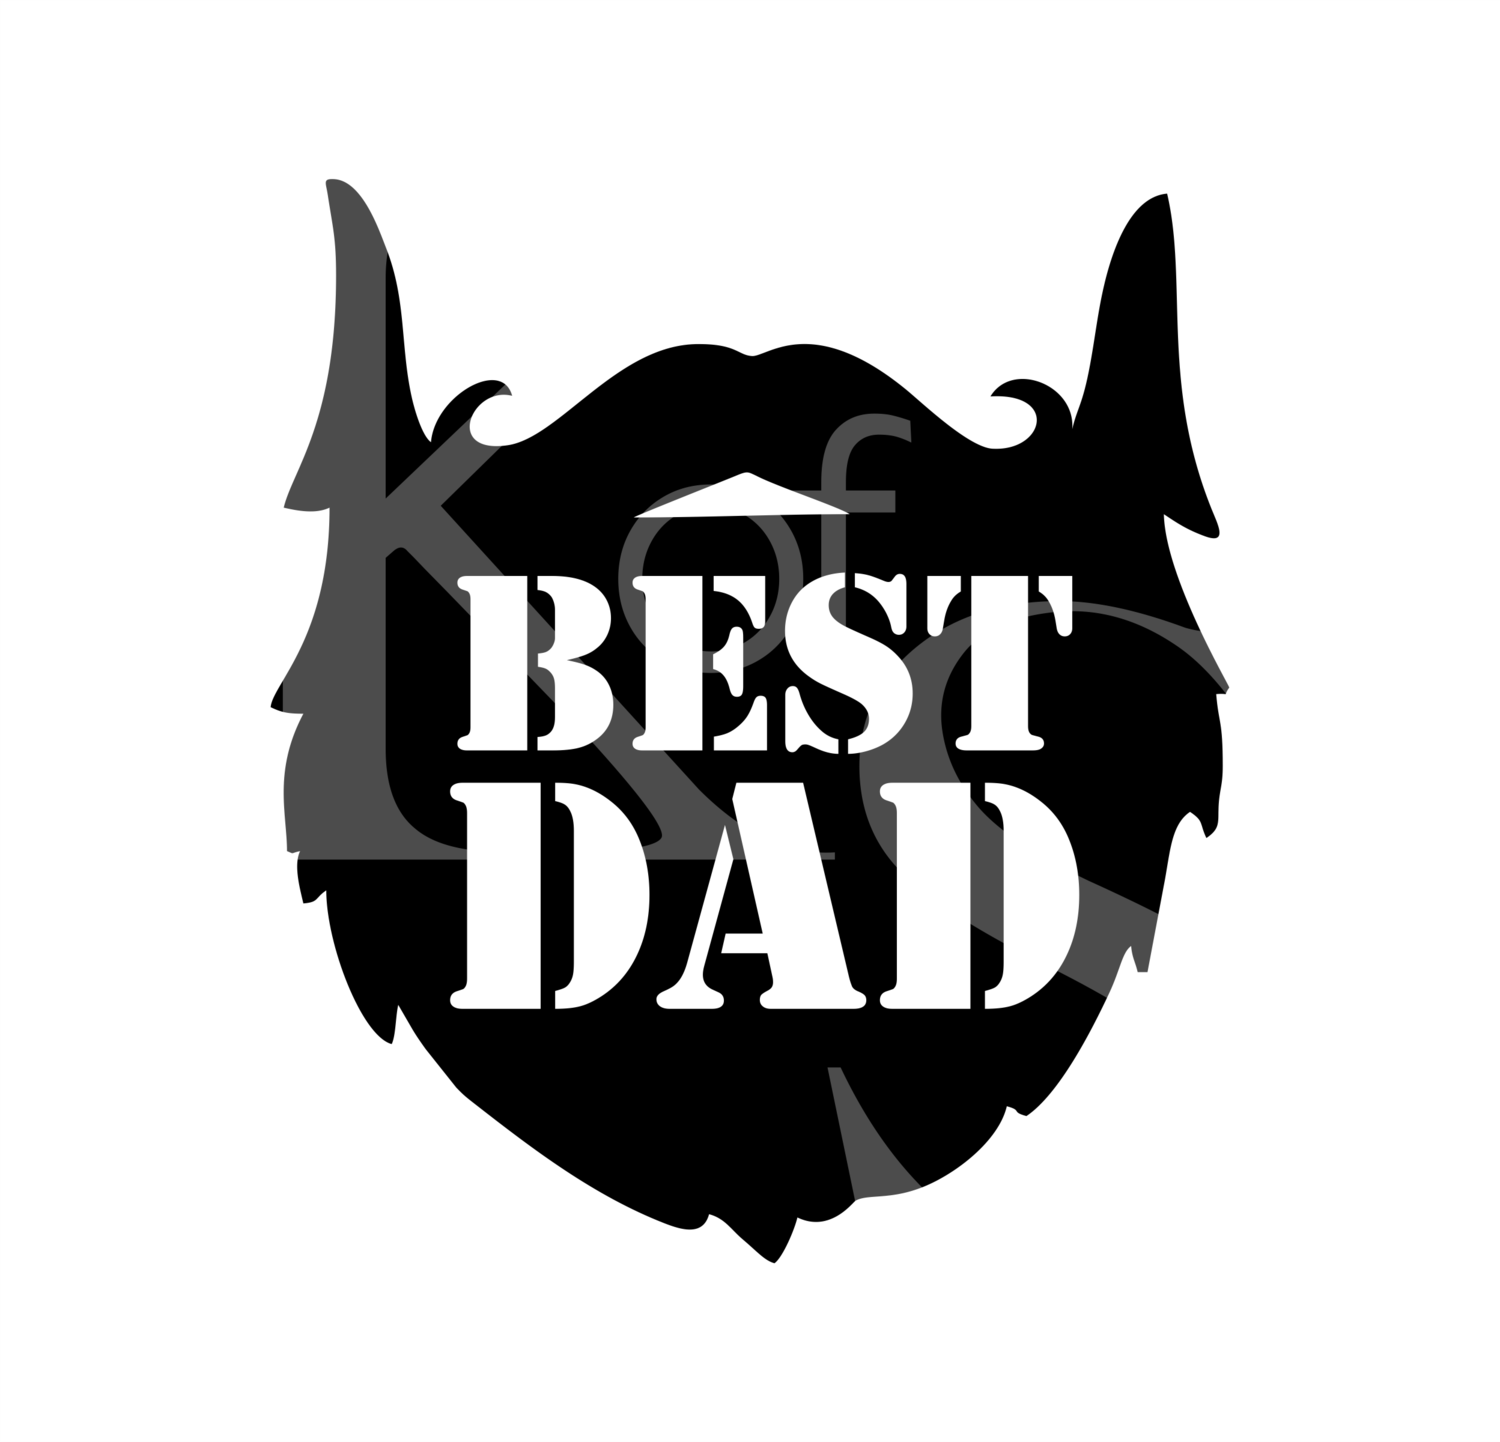 Best Dad Beard SVG, Fathers Day SVG, Beard Svg, Dad Beard Svg, Best Dad Svg, Fathers Day 2020 SVG,, Fathers Day Shirt Svg, Dxf